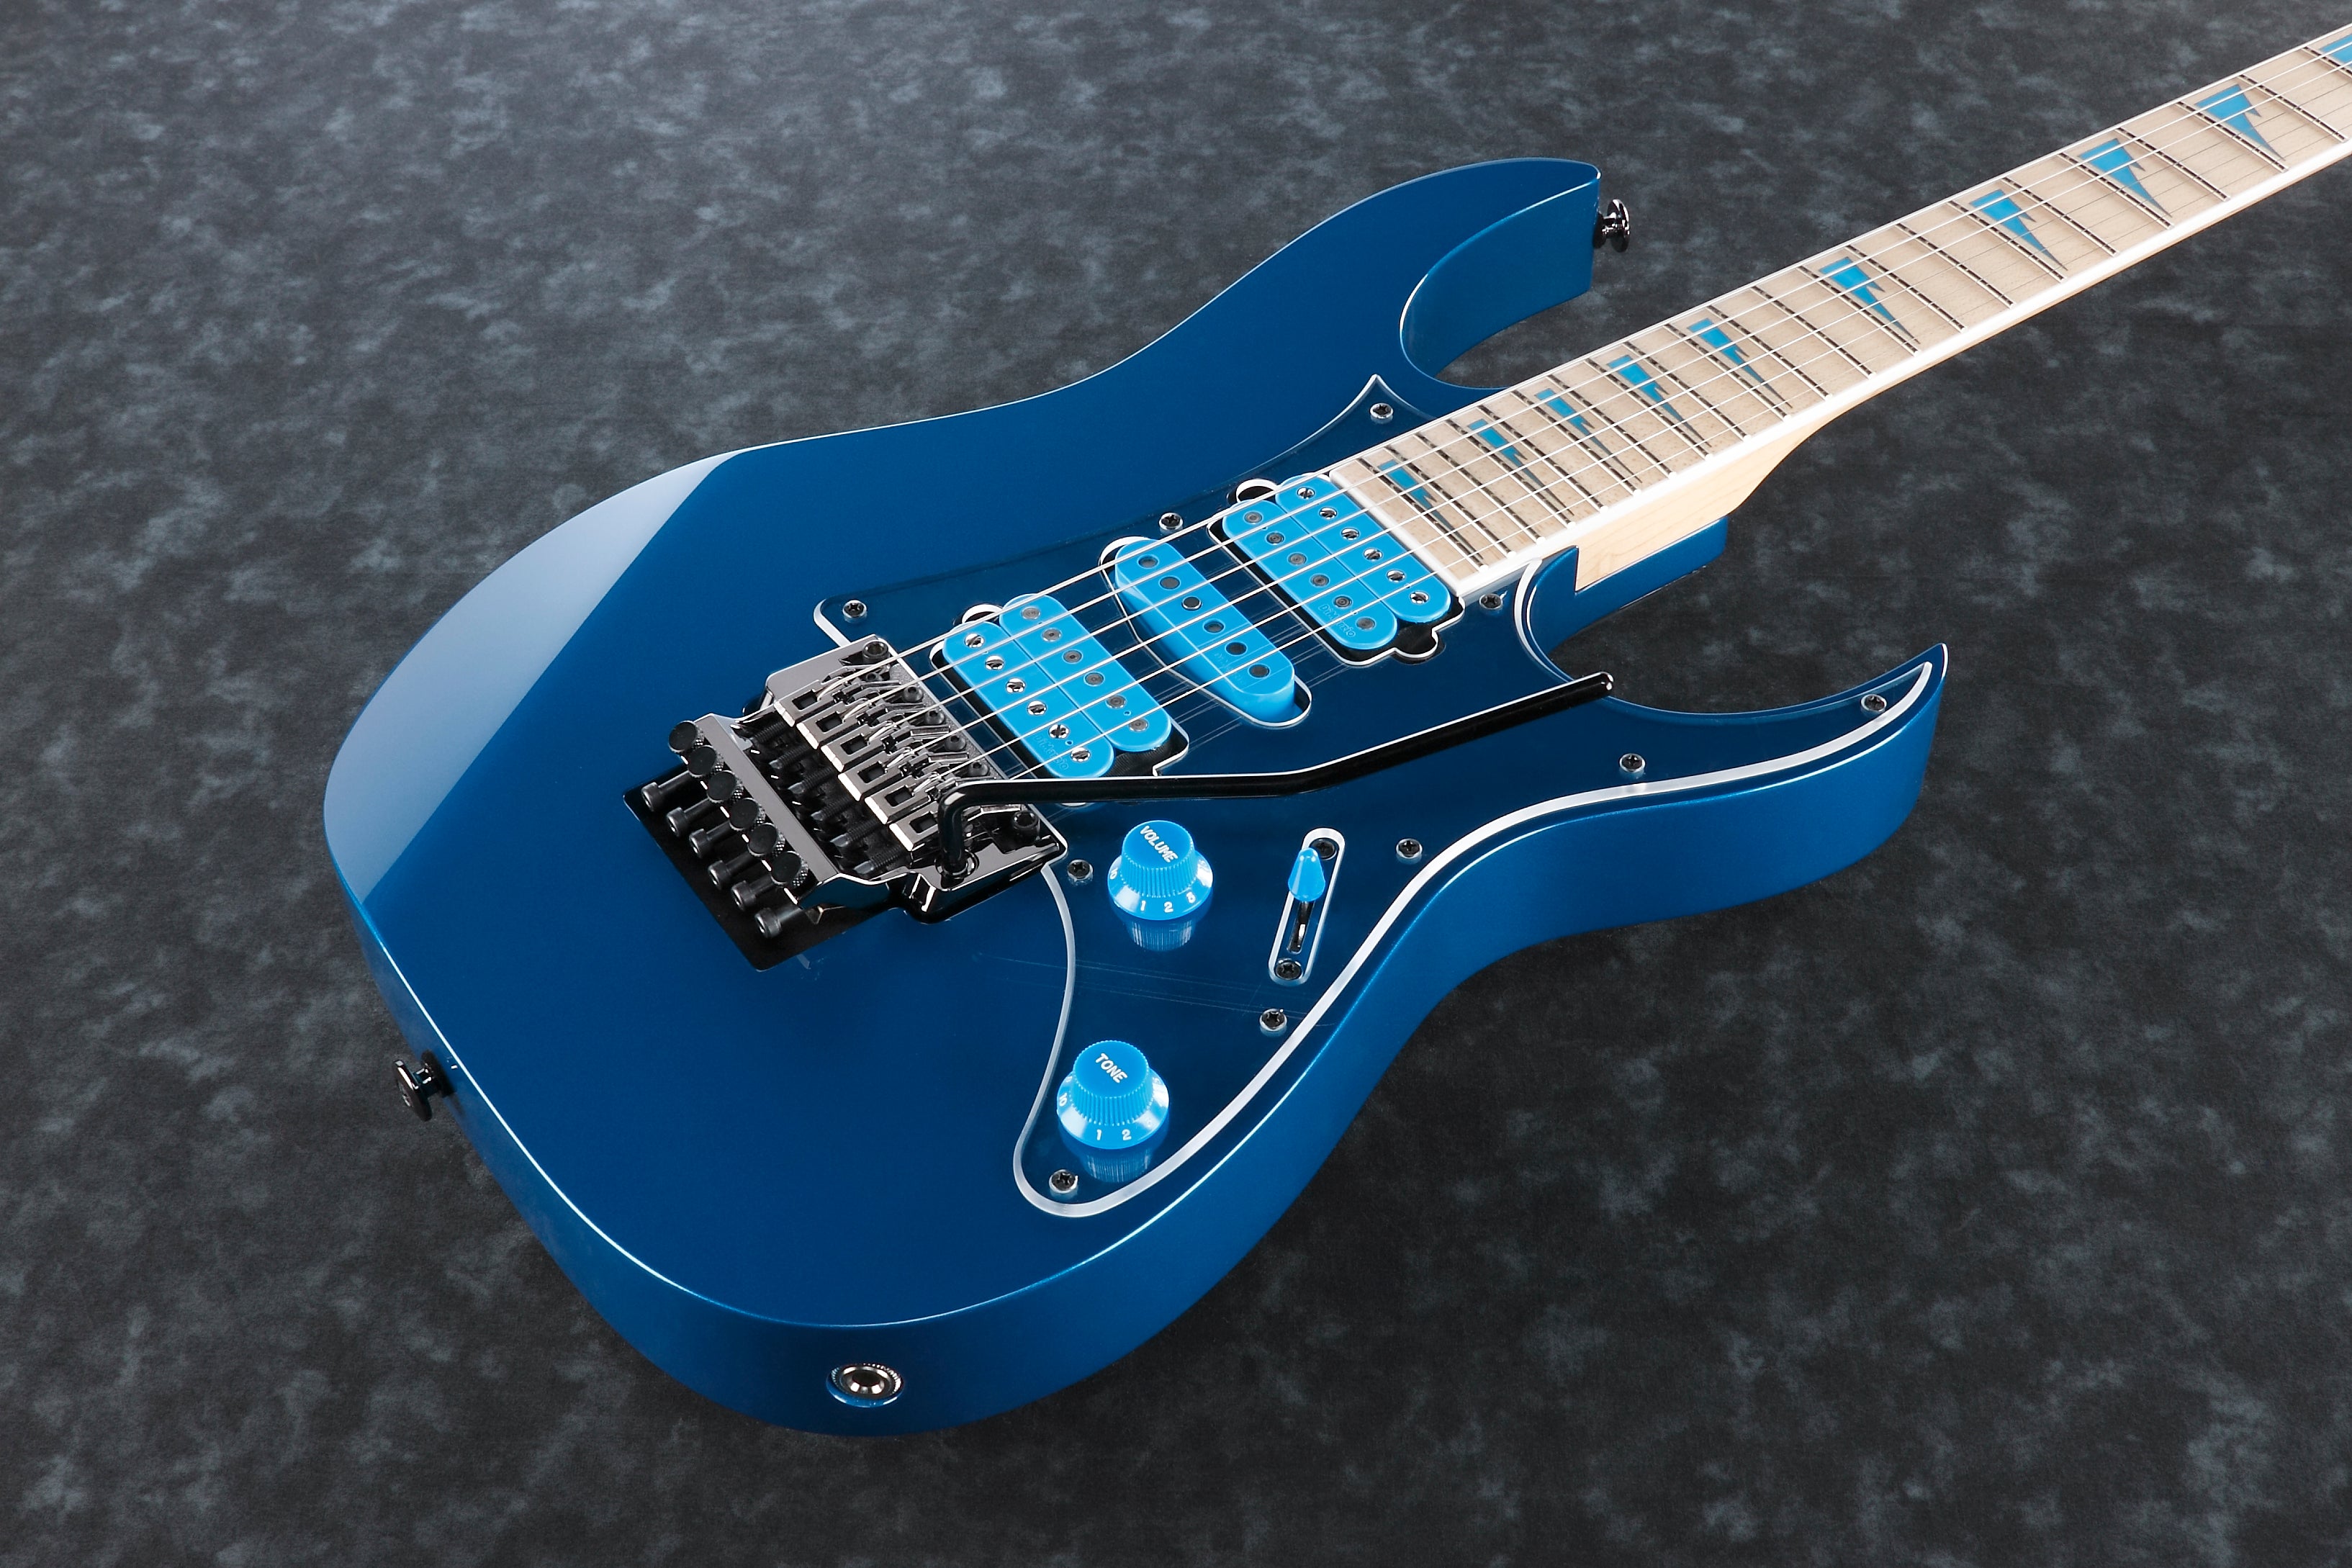 Ibanez RG3770DX-LB Prestige (Laser Blue) Japan Made Electric Guitar 電結他